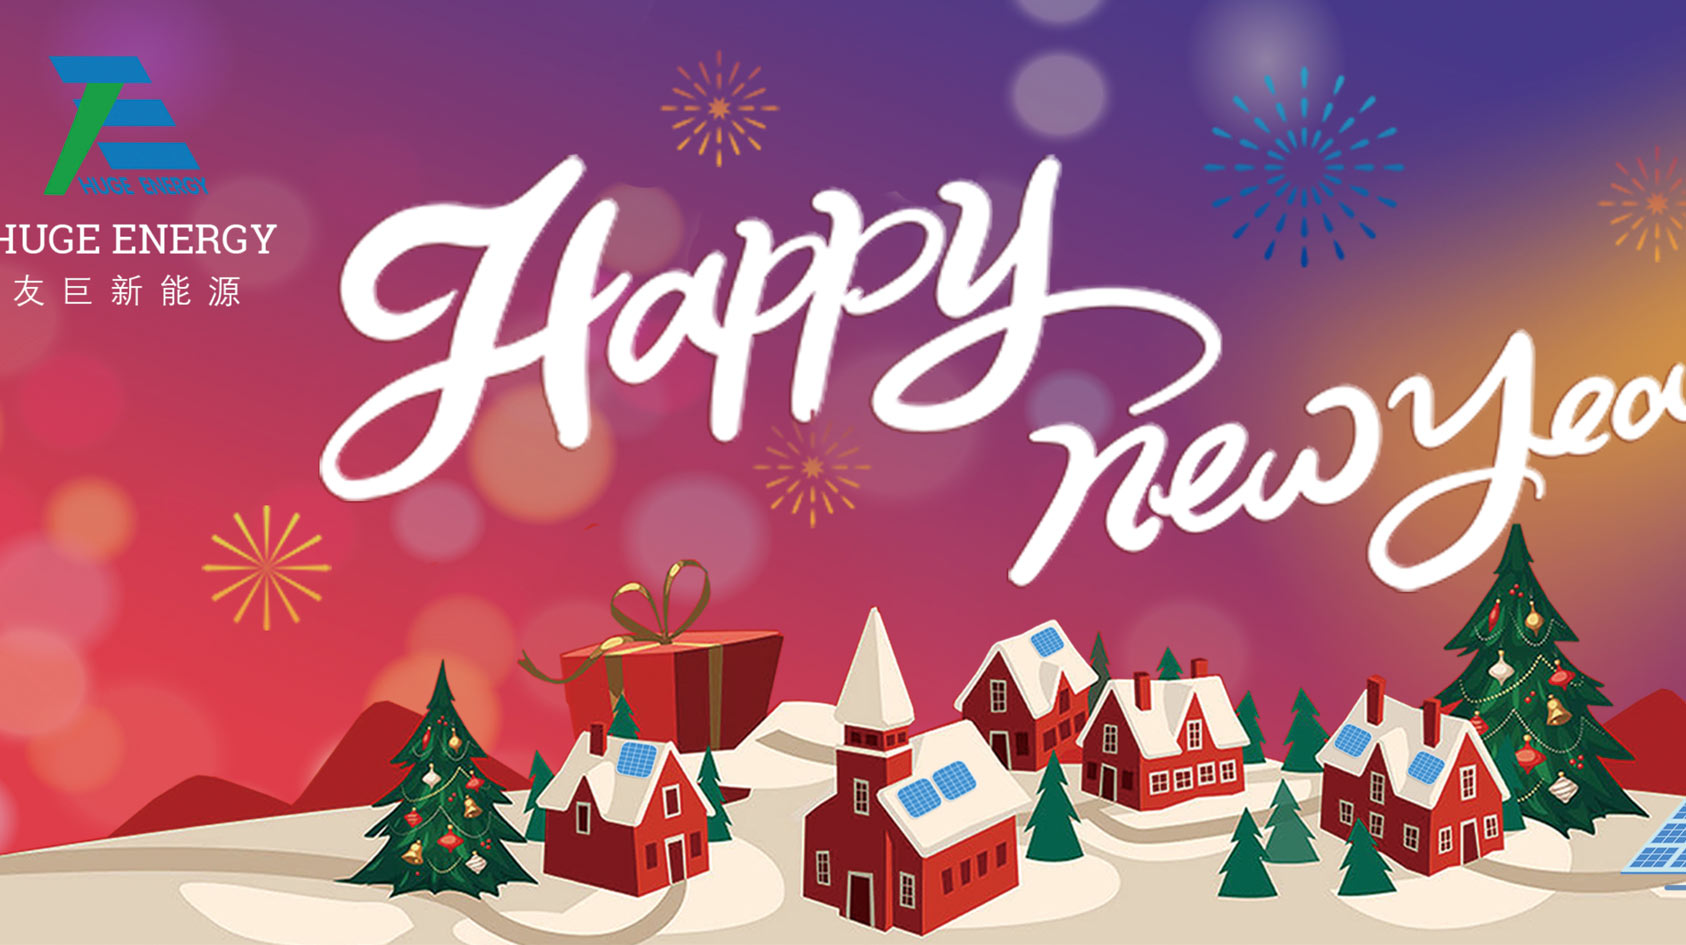 새해 초, 휴즈에너지는 새해 복 많이 받으세요!